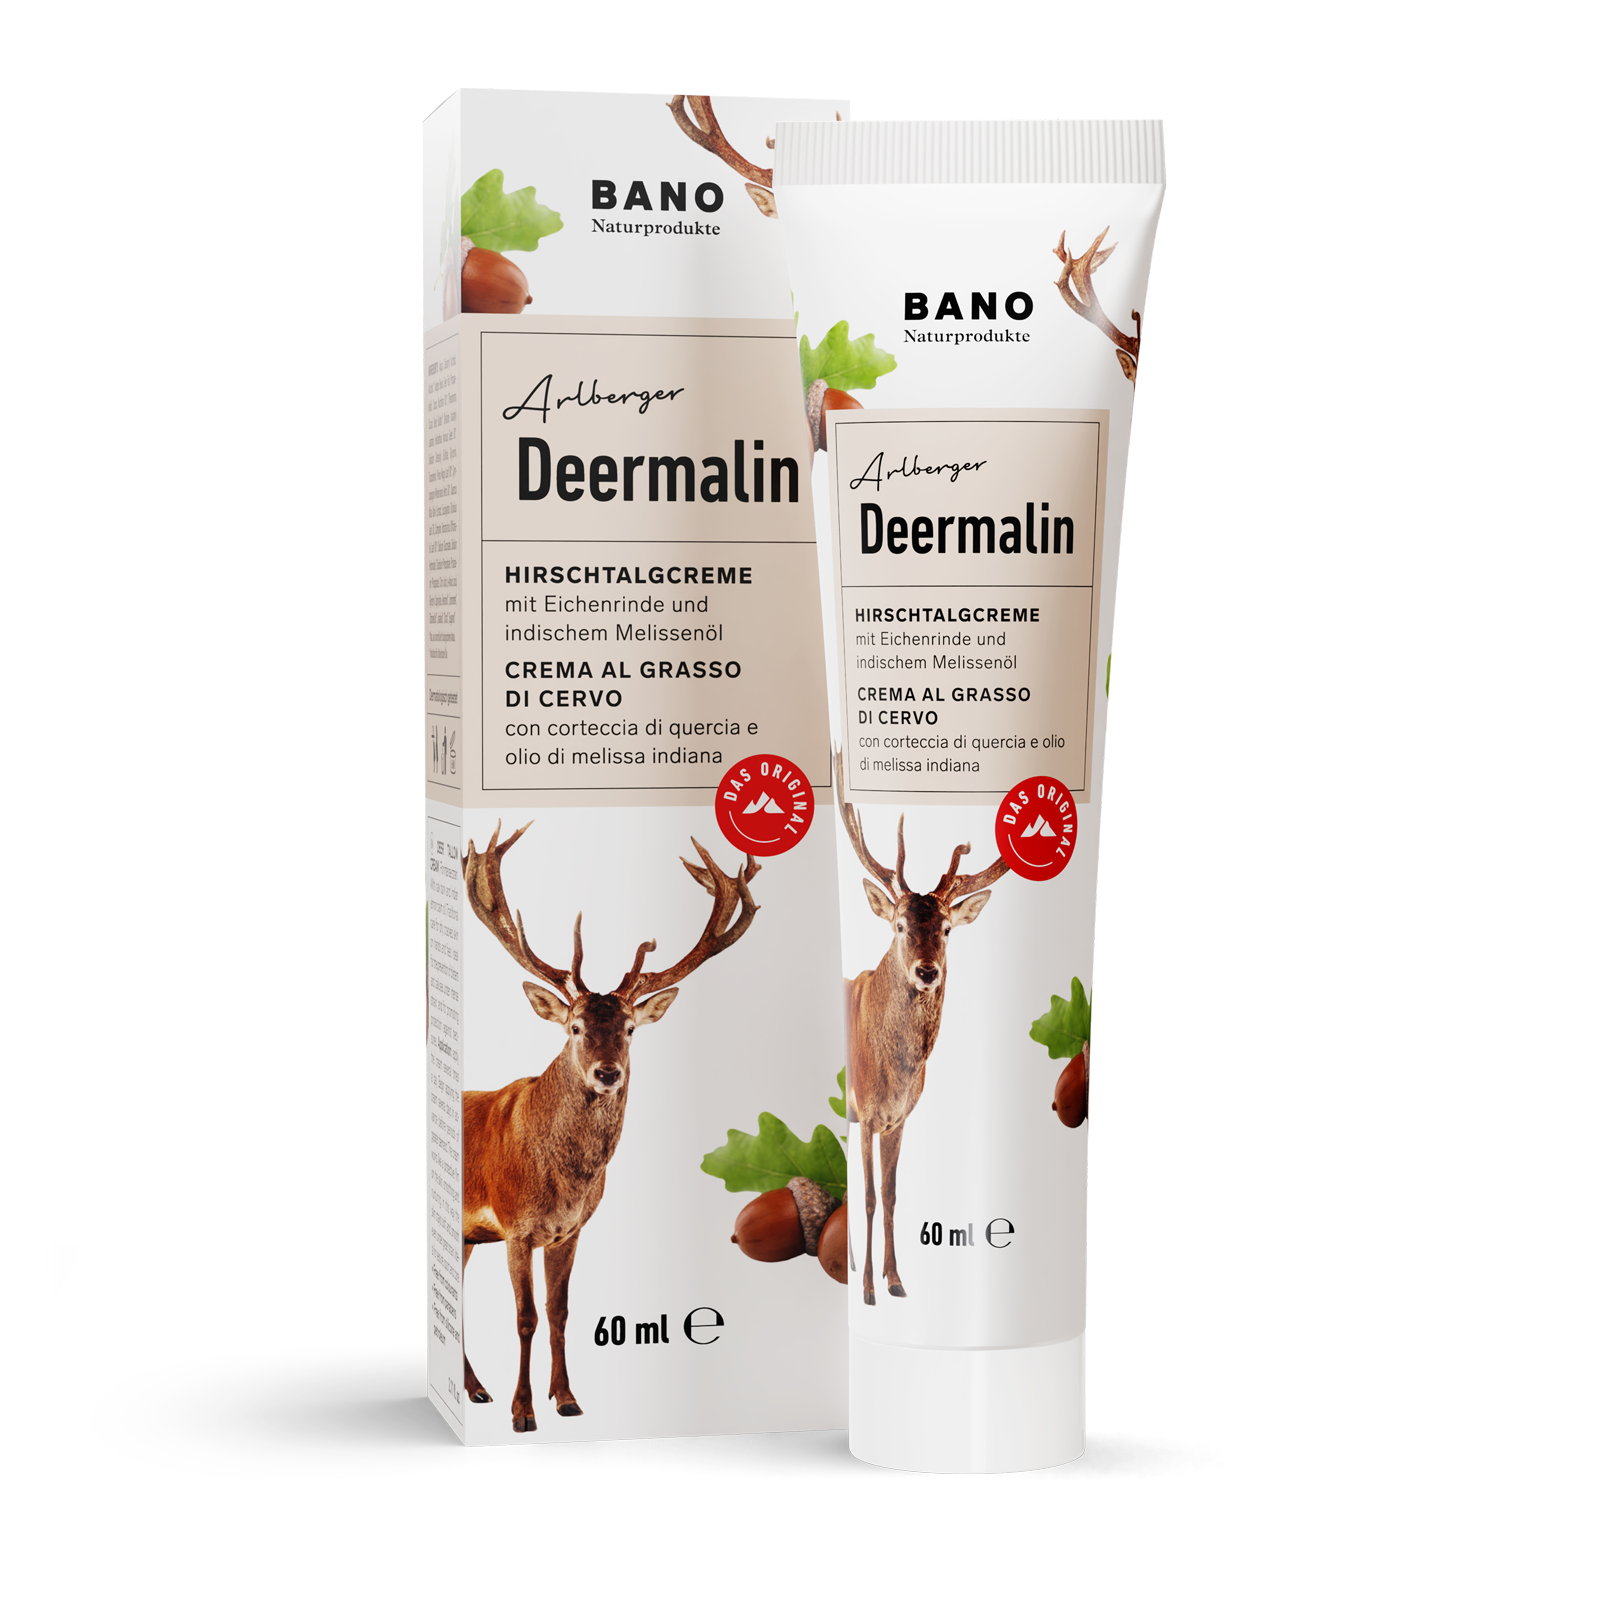 Arlberger Deermalin Deer Tallow Cream